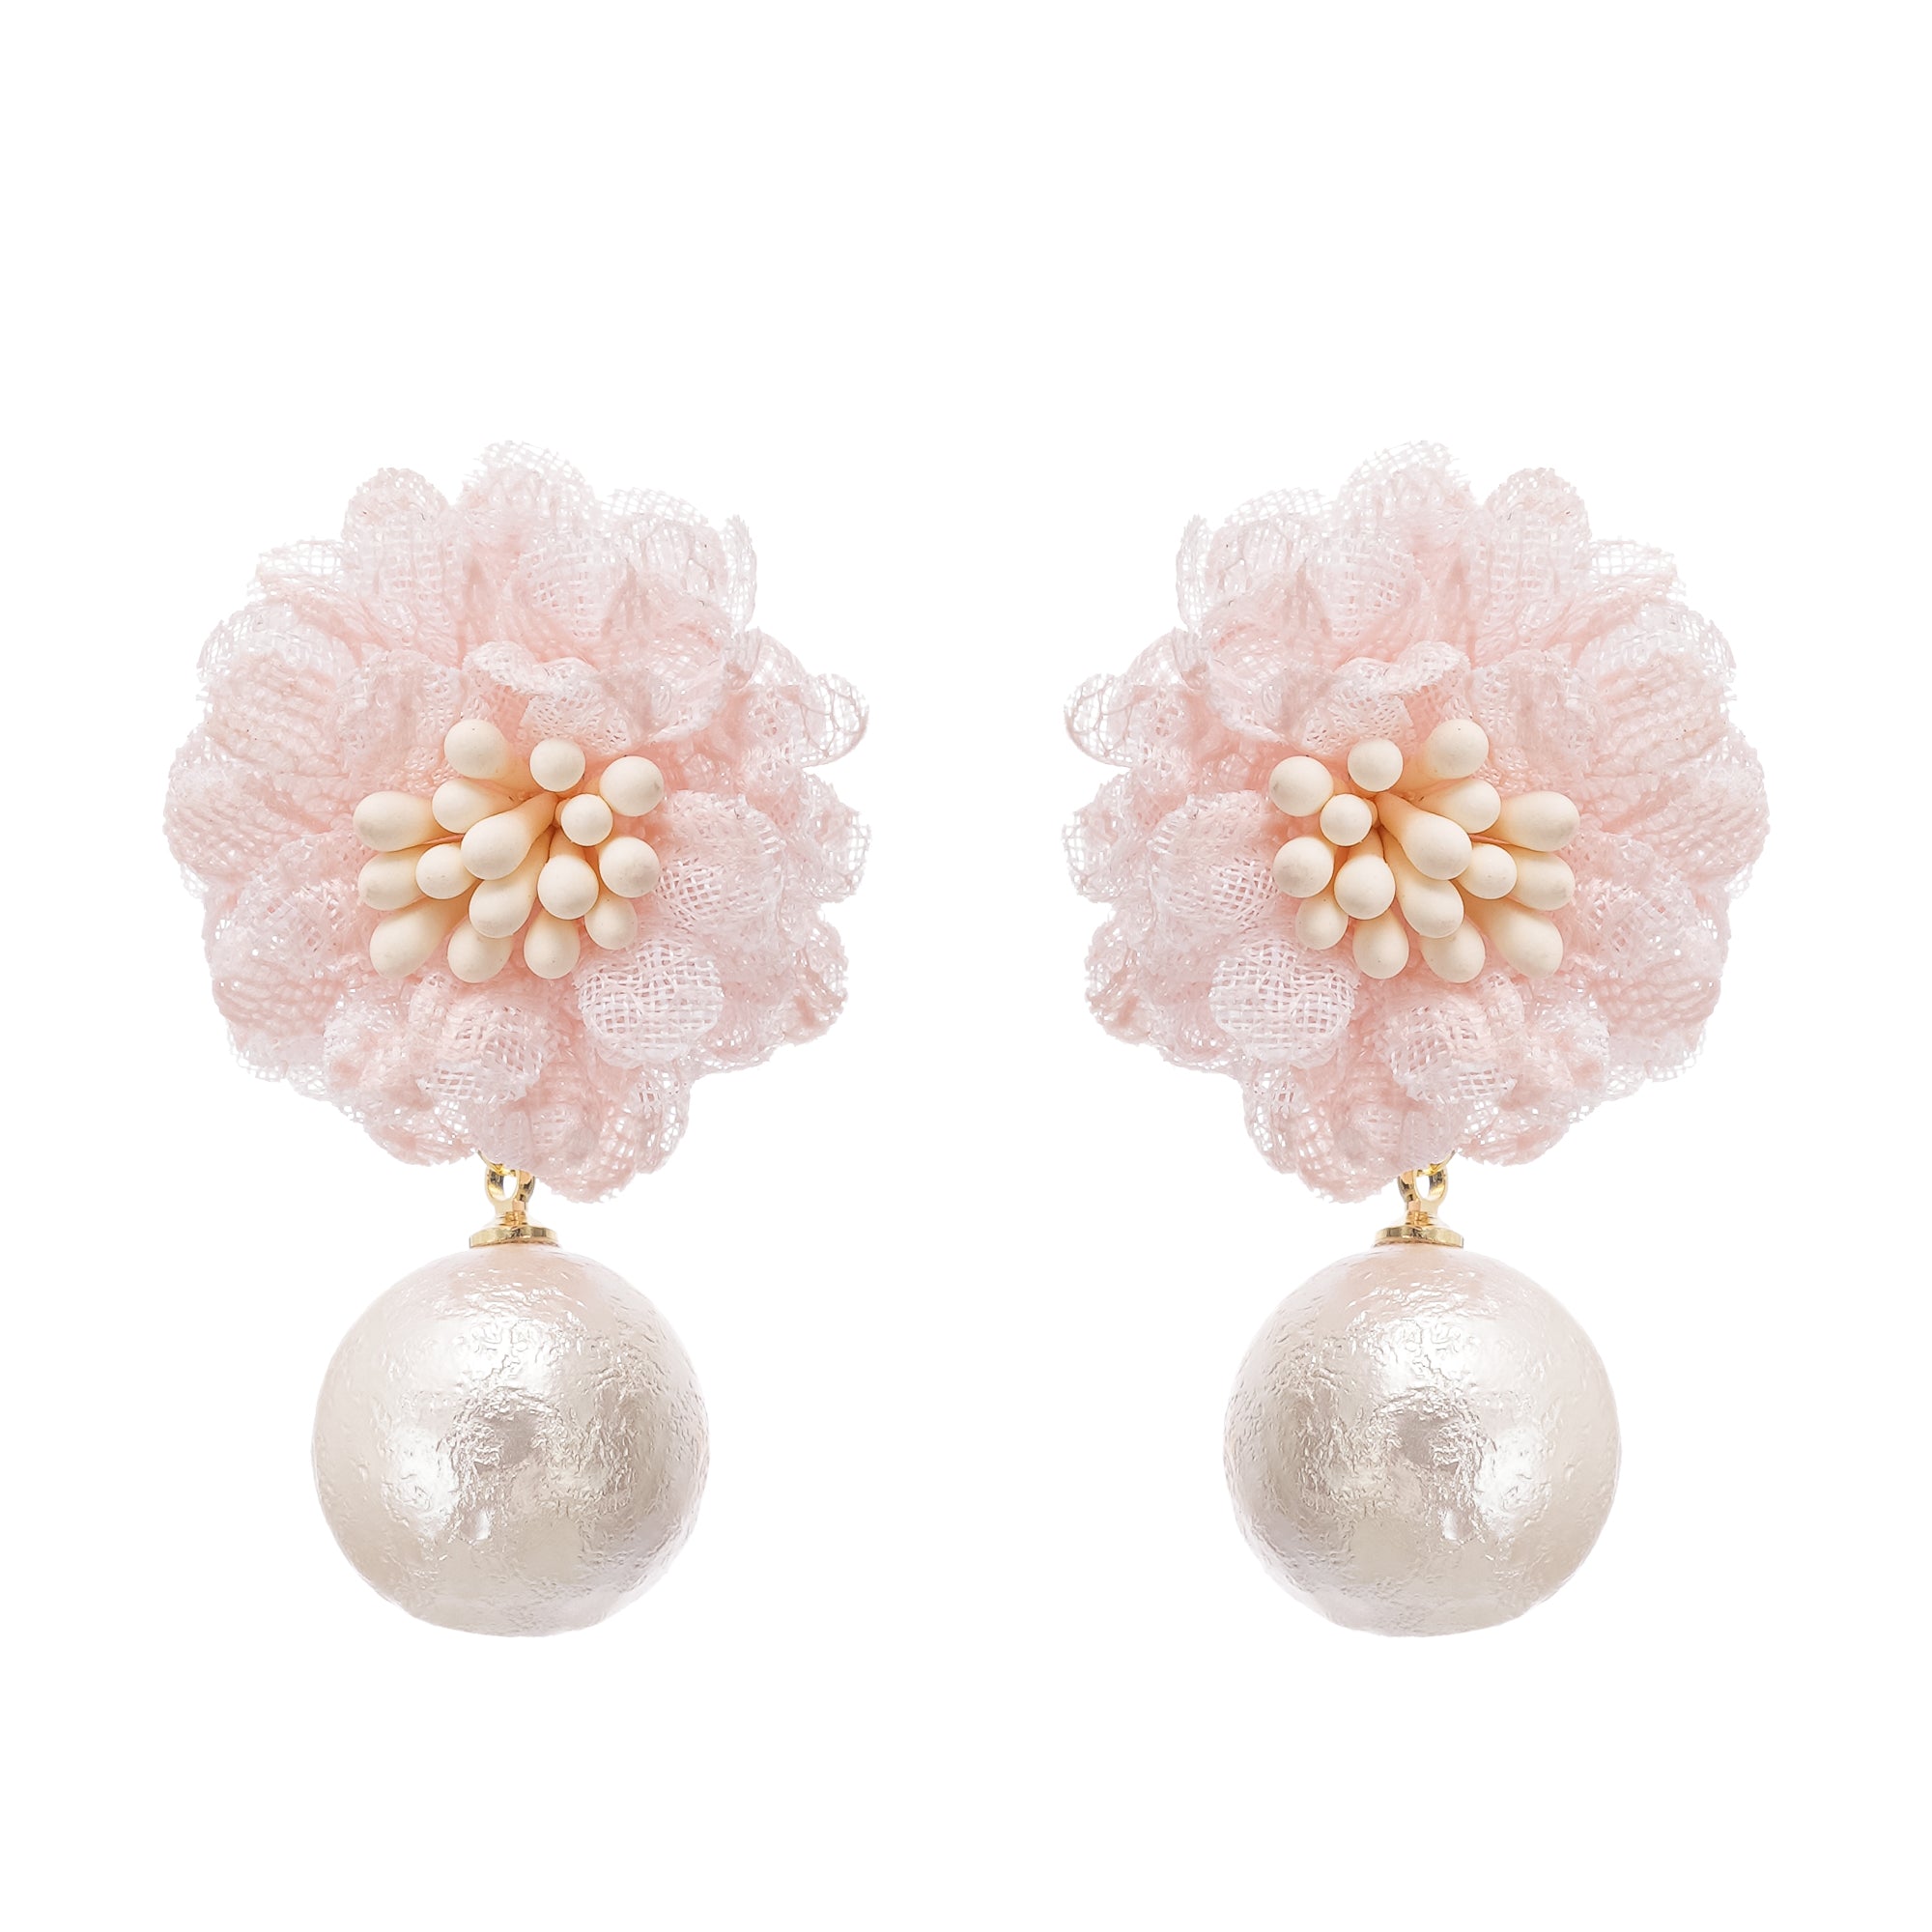 Capriana floral motif drop earrings